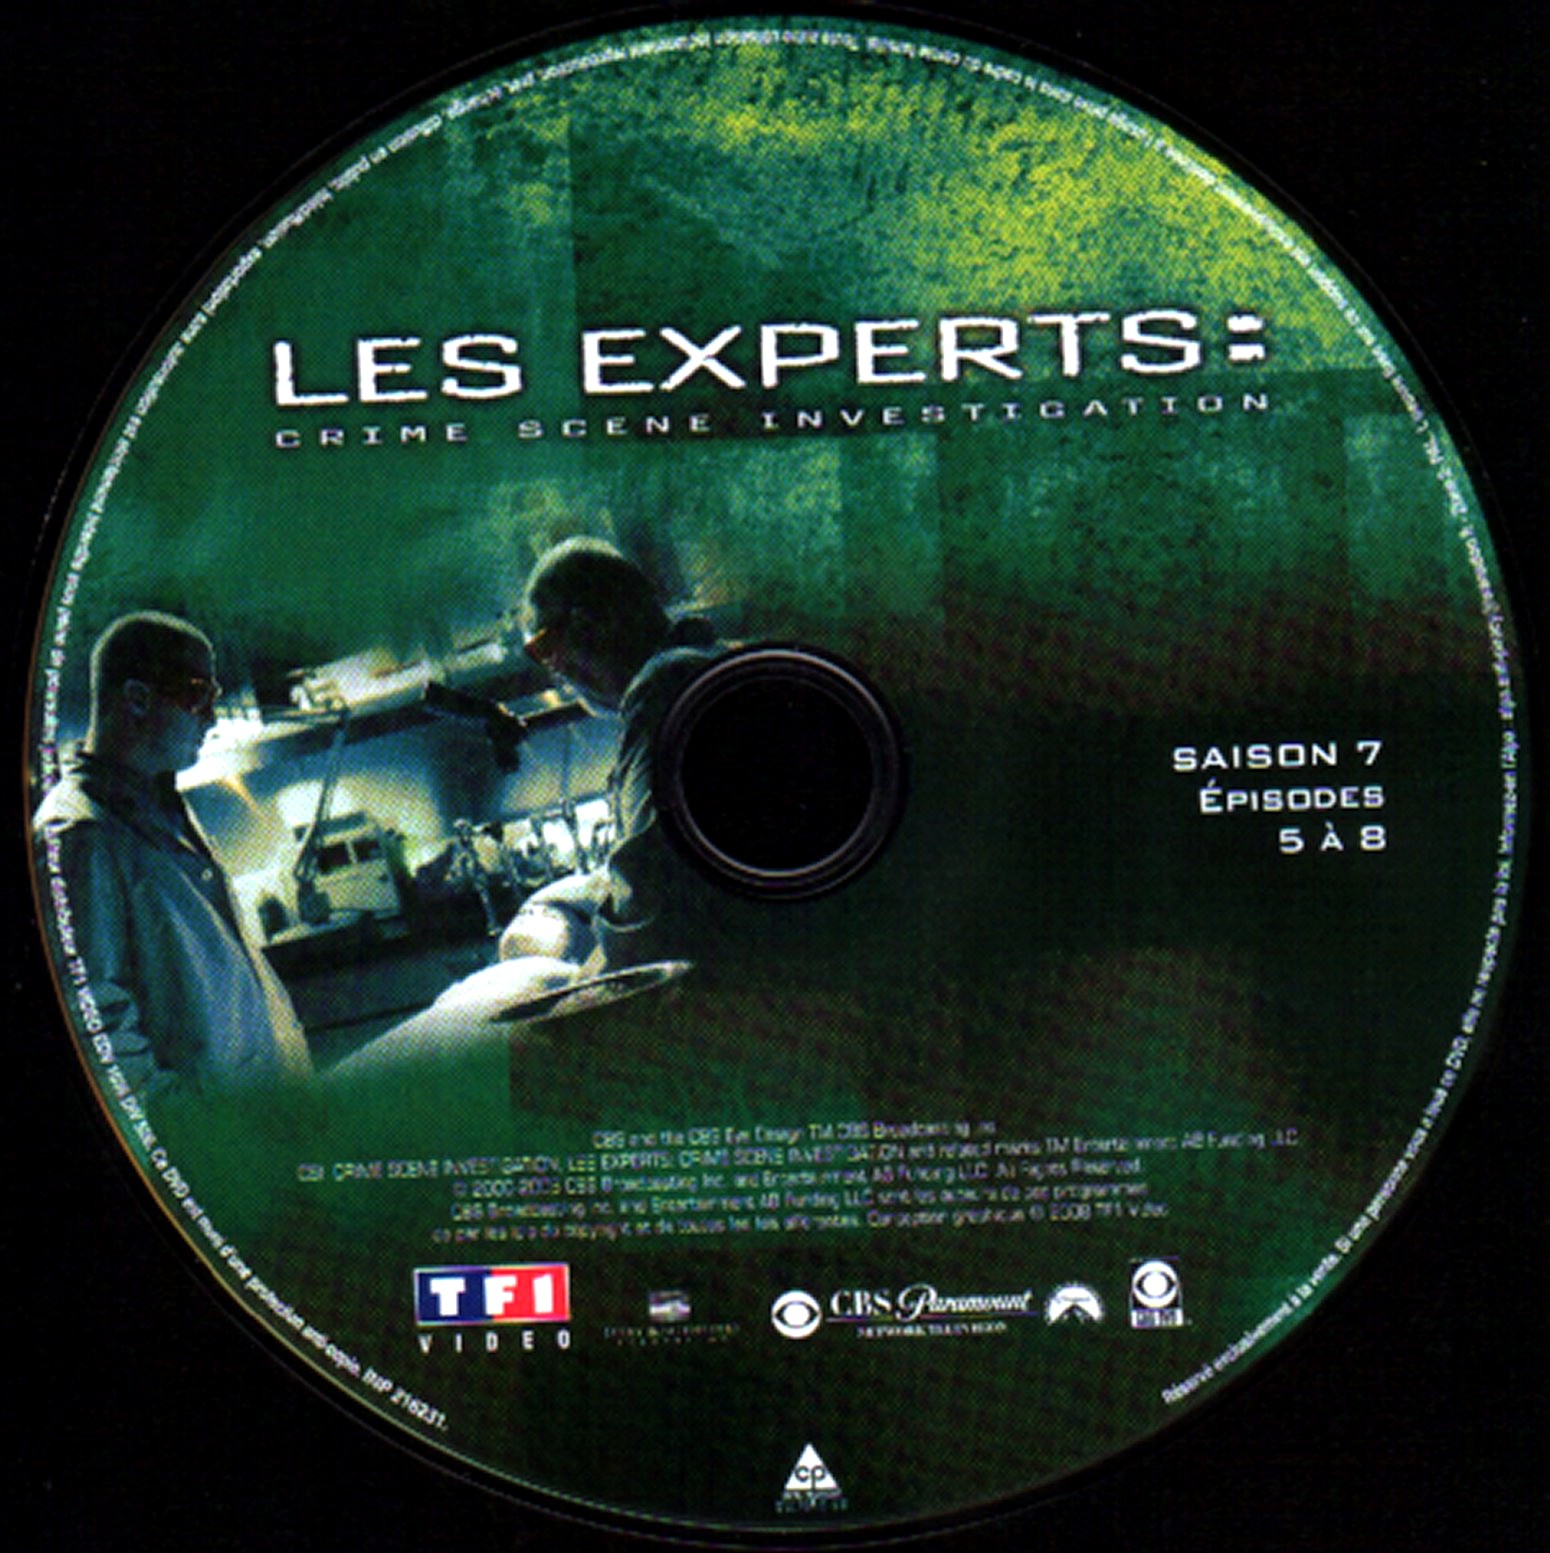 Les experts Saison 7 DISC 2